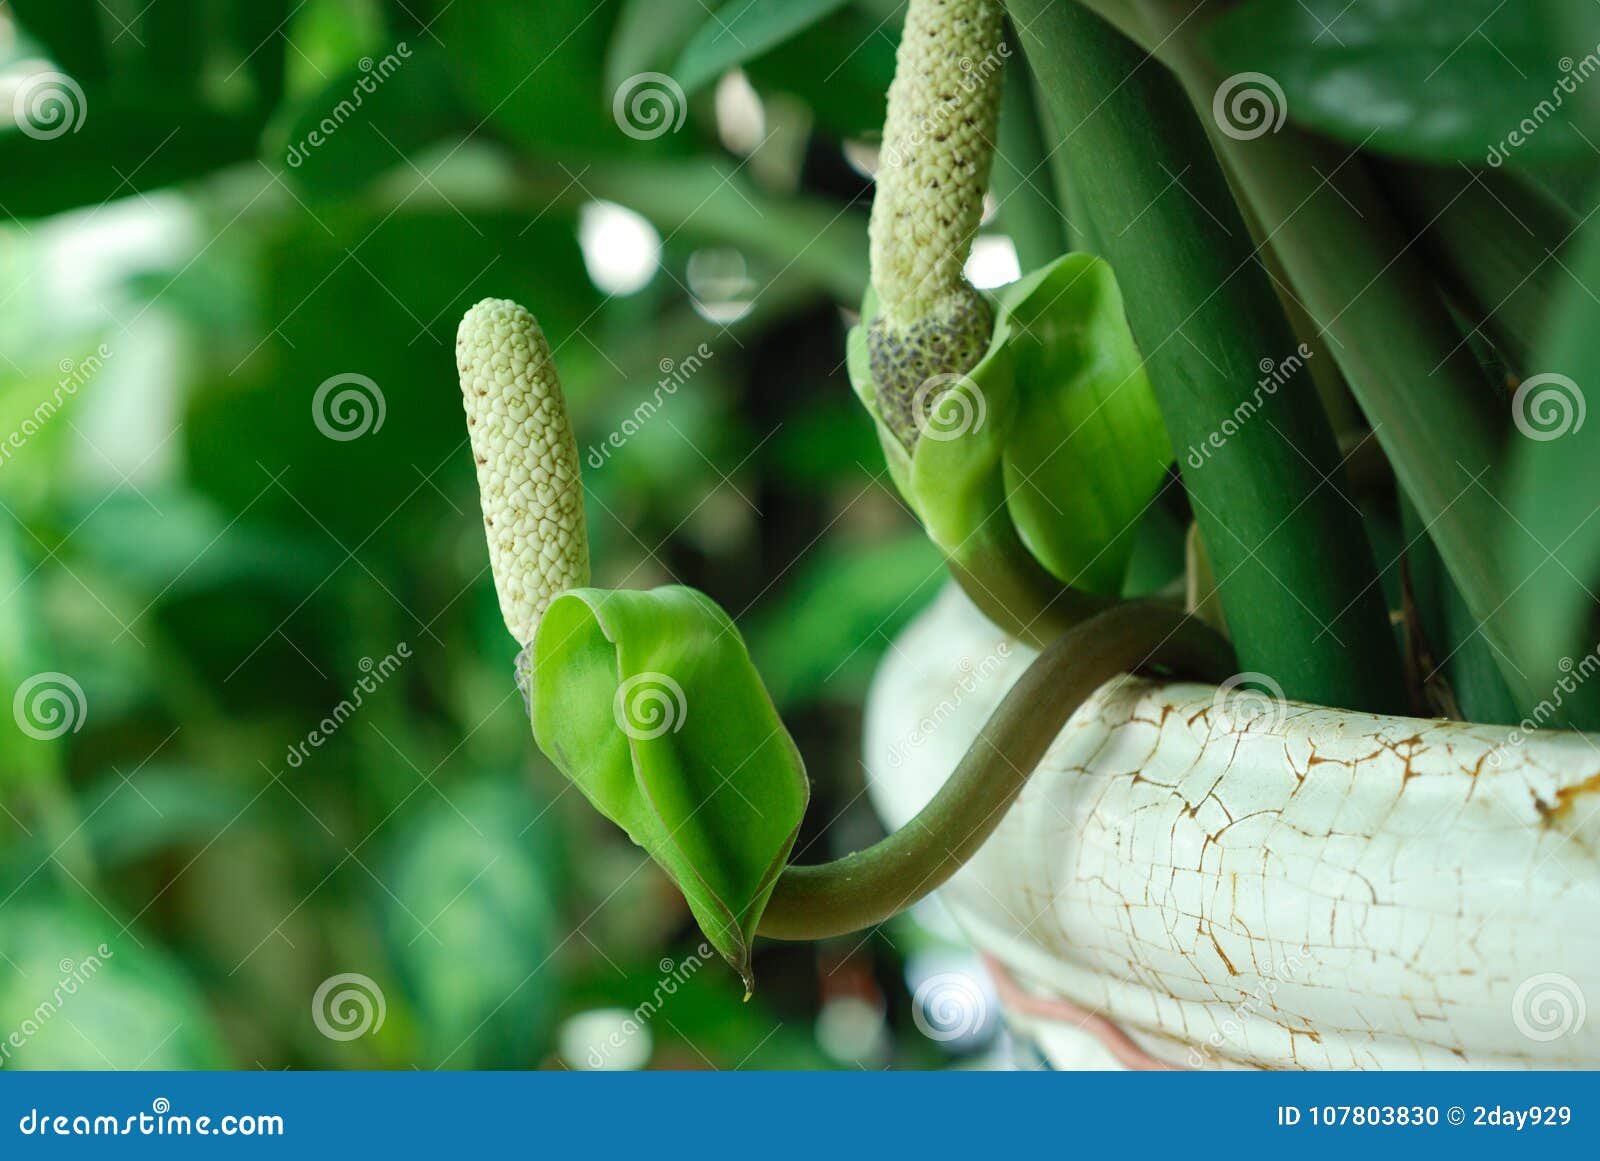 Flor Do Zamiifolia De Zamioculcas Foto de Stock - Imagem de verde,  tropical: 107803830